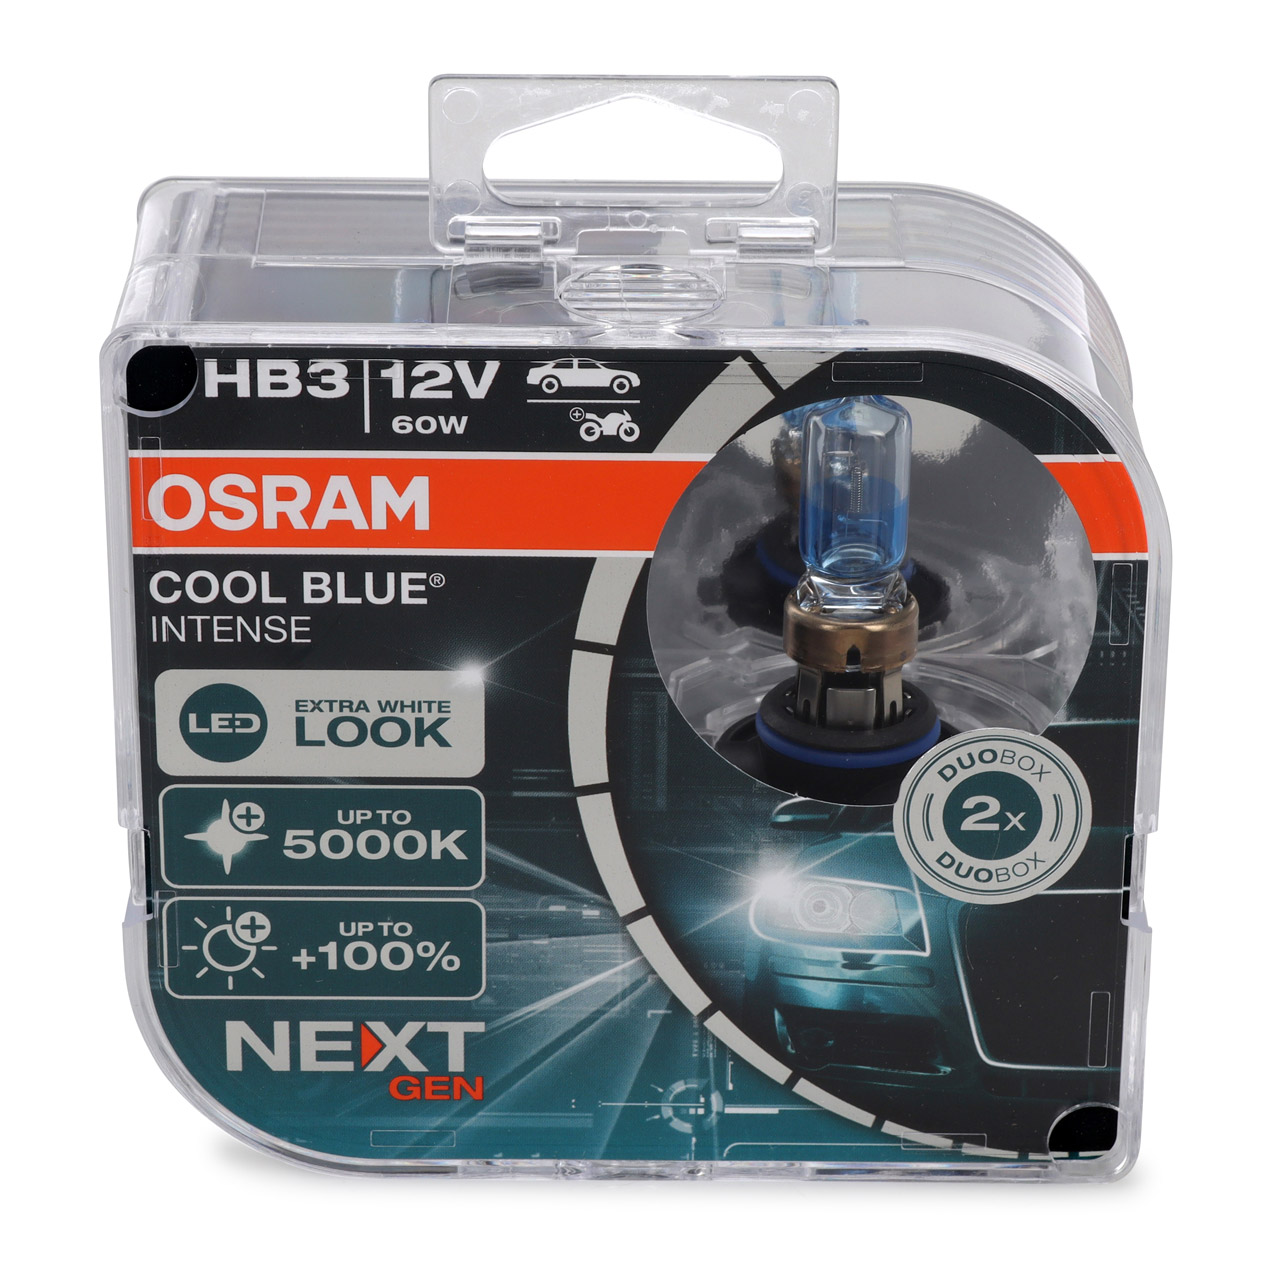 2x OSRAM Glühlampe HB3 COOL BLUE INTENSE Next Gen 12V 60W P20D +100% 5000K